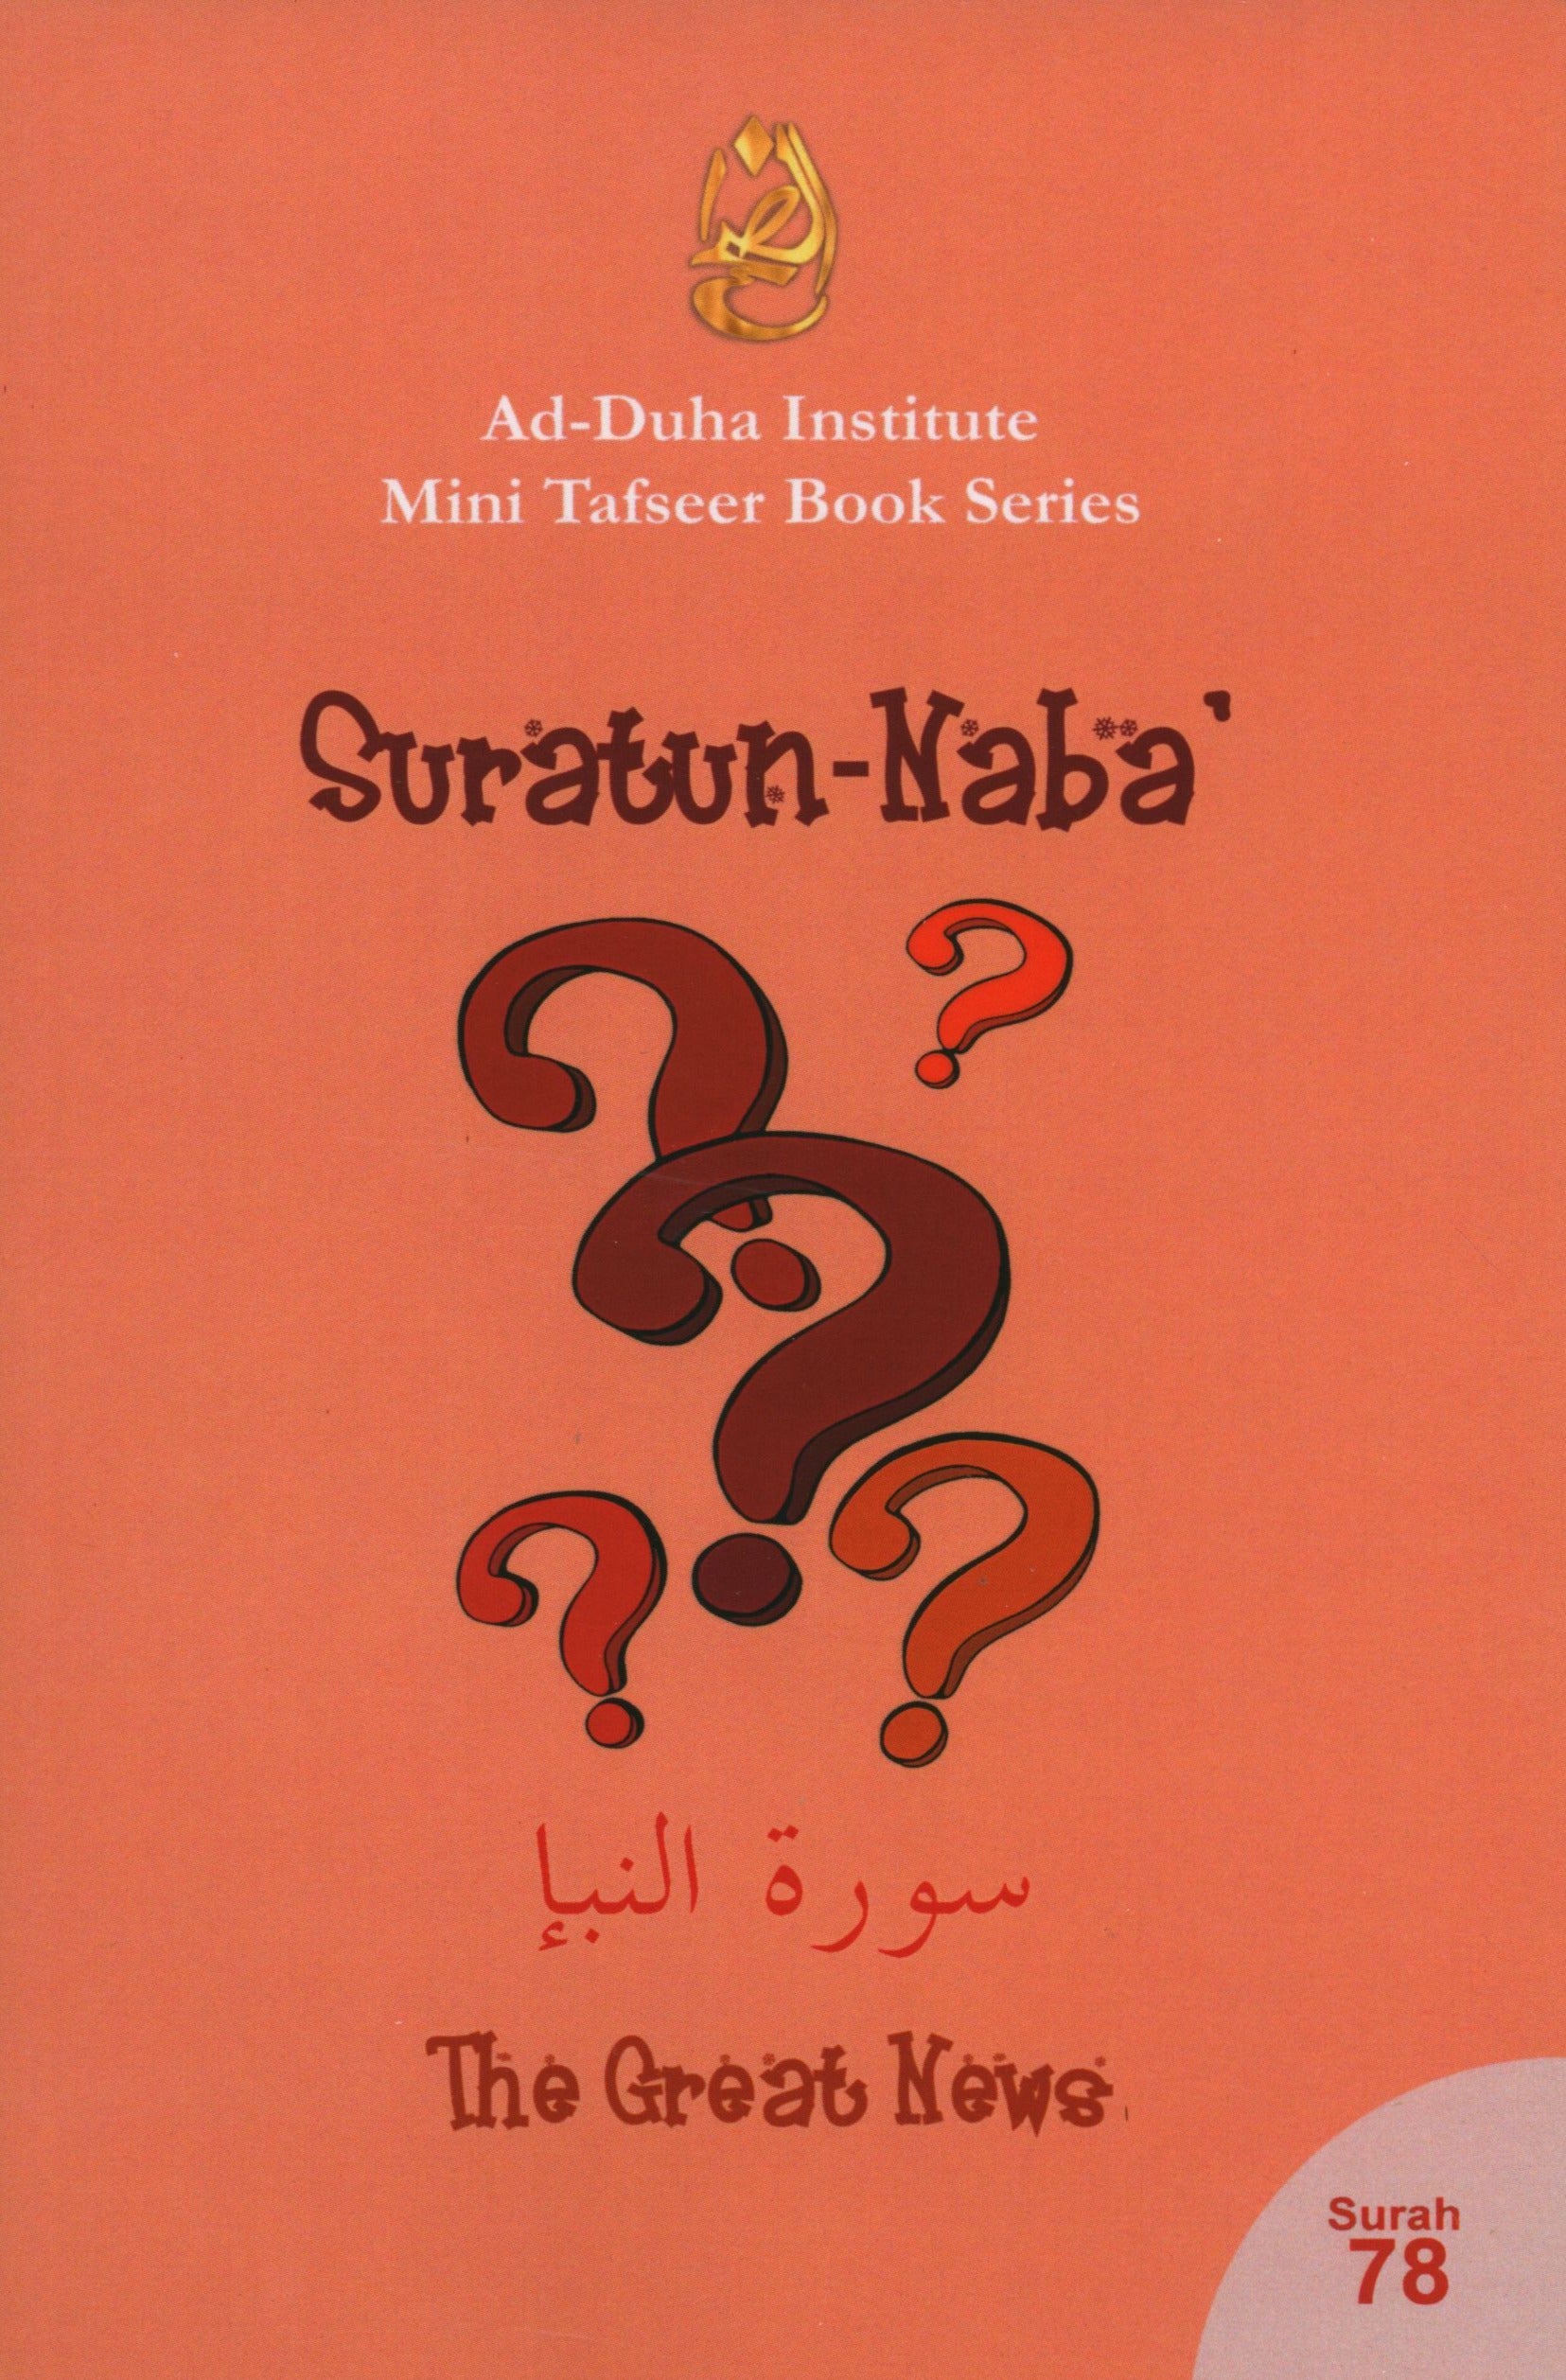 Mini Tafseer Book Suratun Naba' (Surah 78)